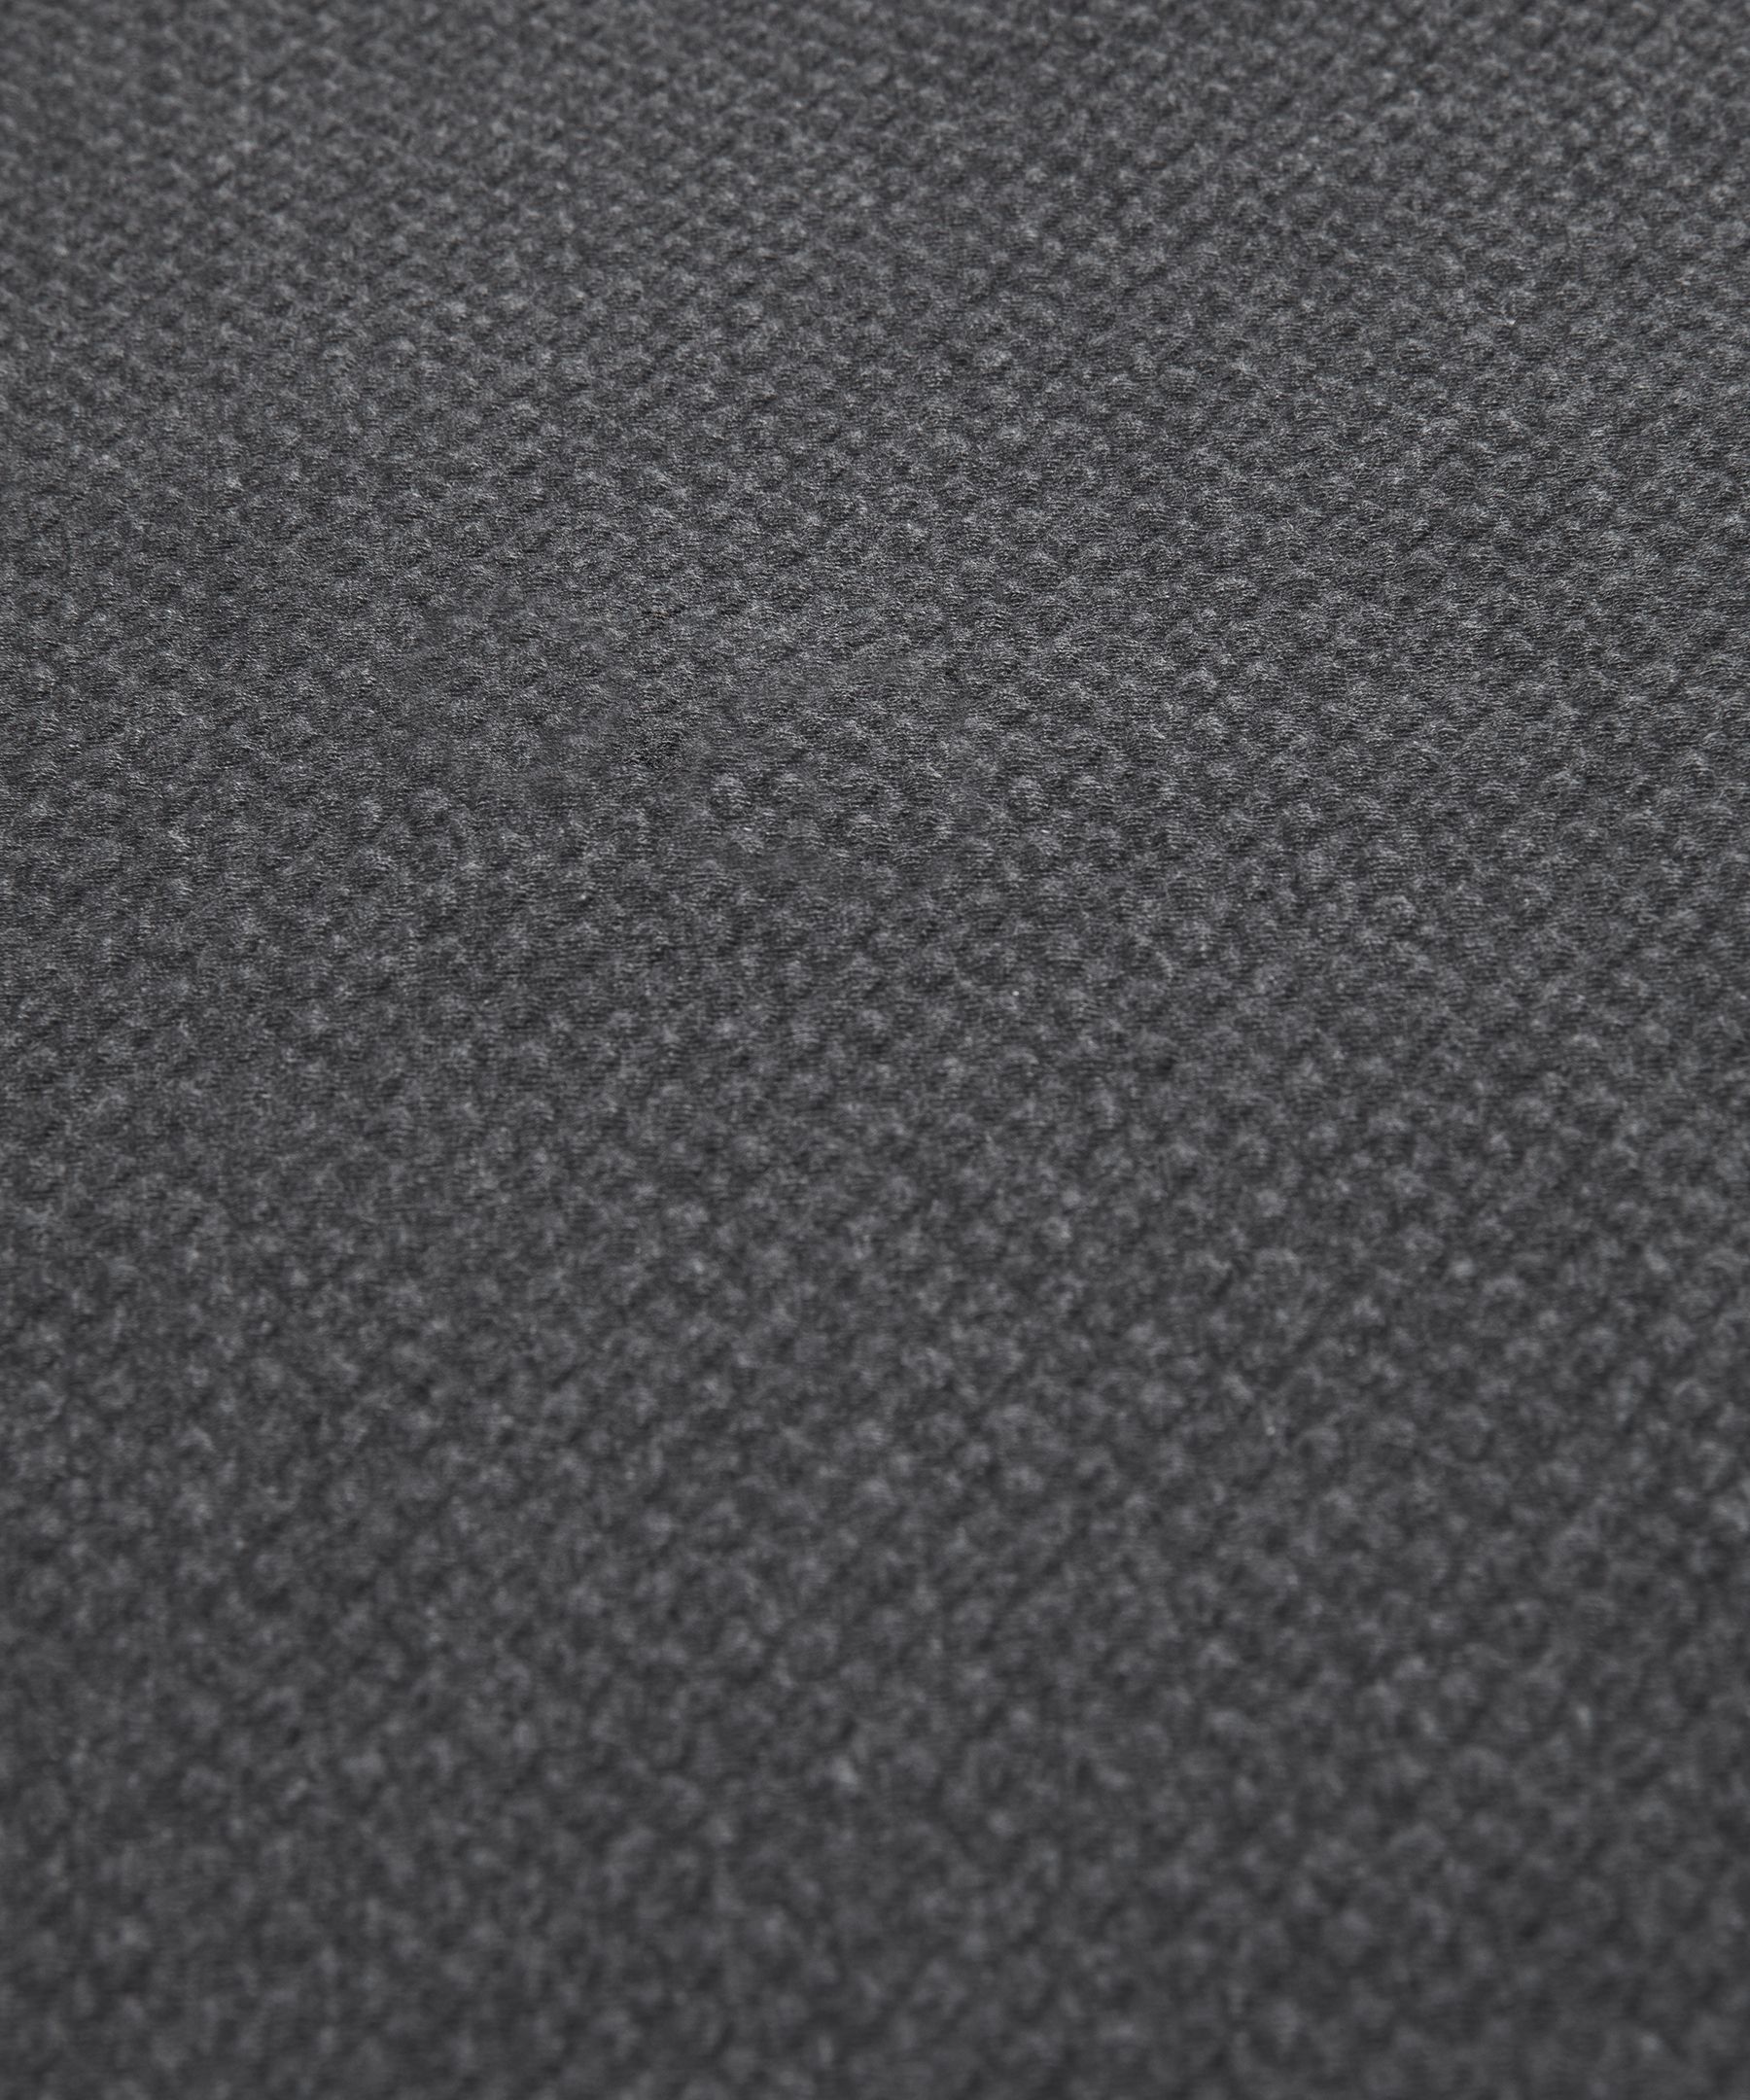 Textured Double-Knit Cotton Half Zip | Men's Hoodies & Sweatshirts